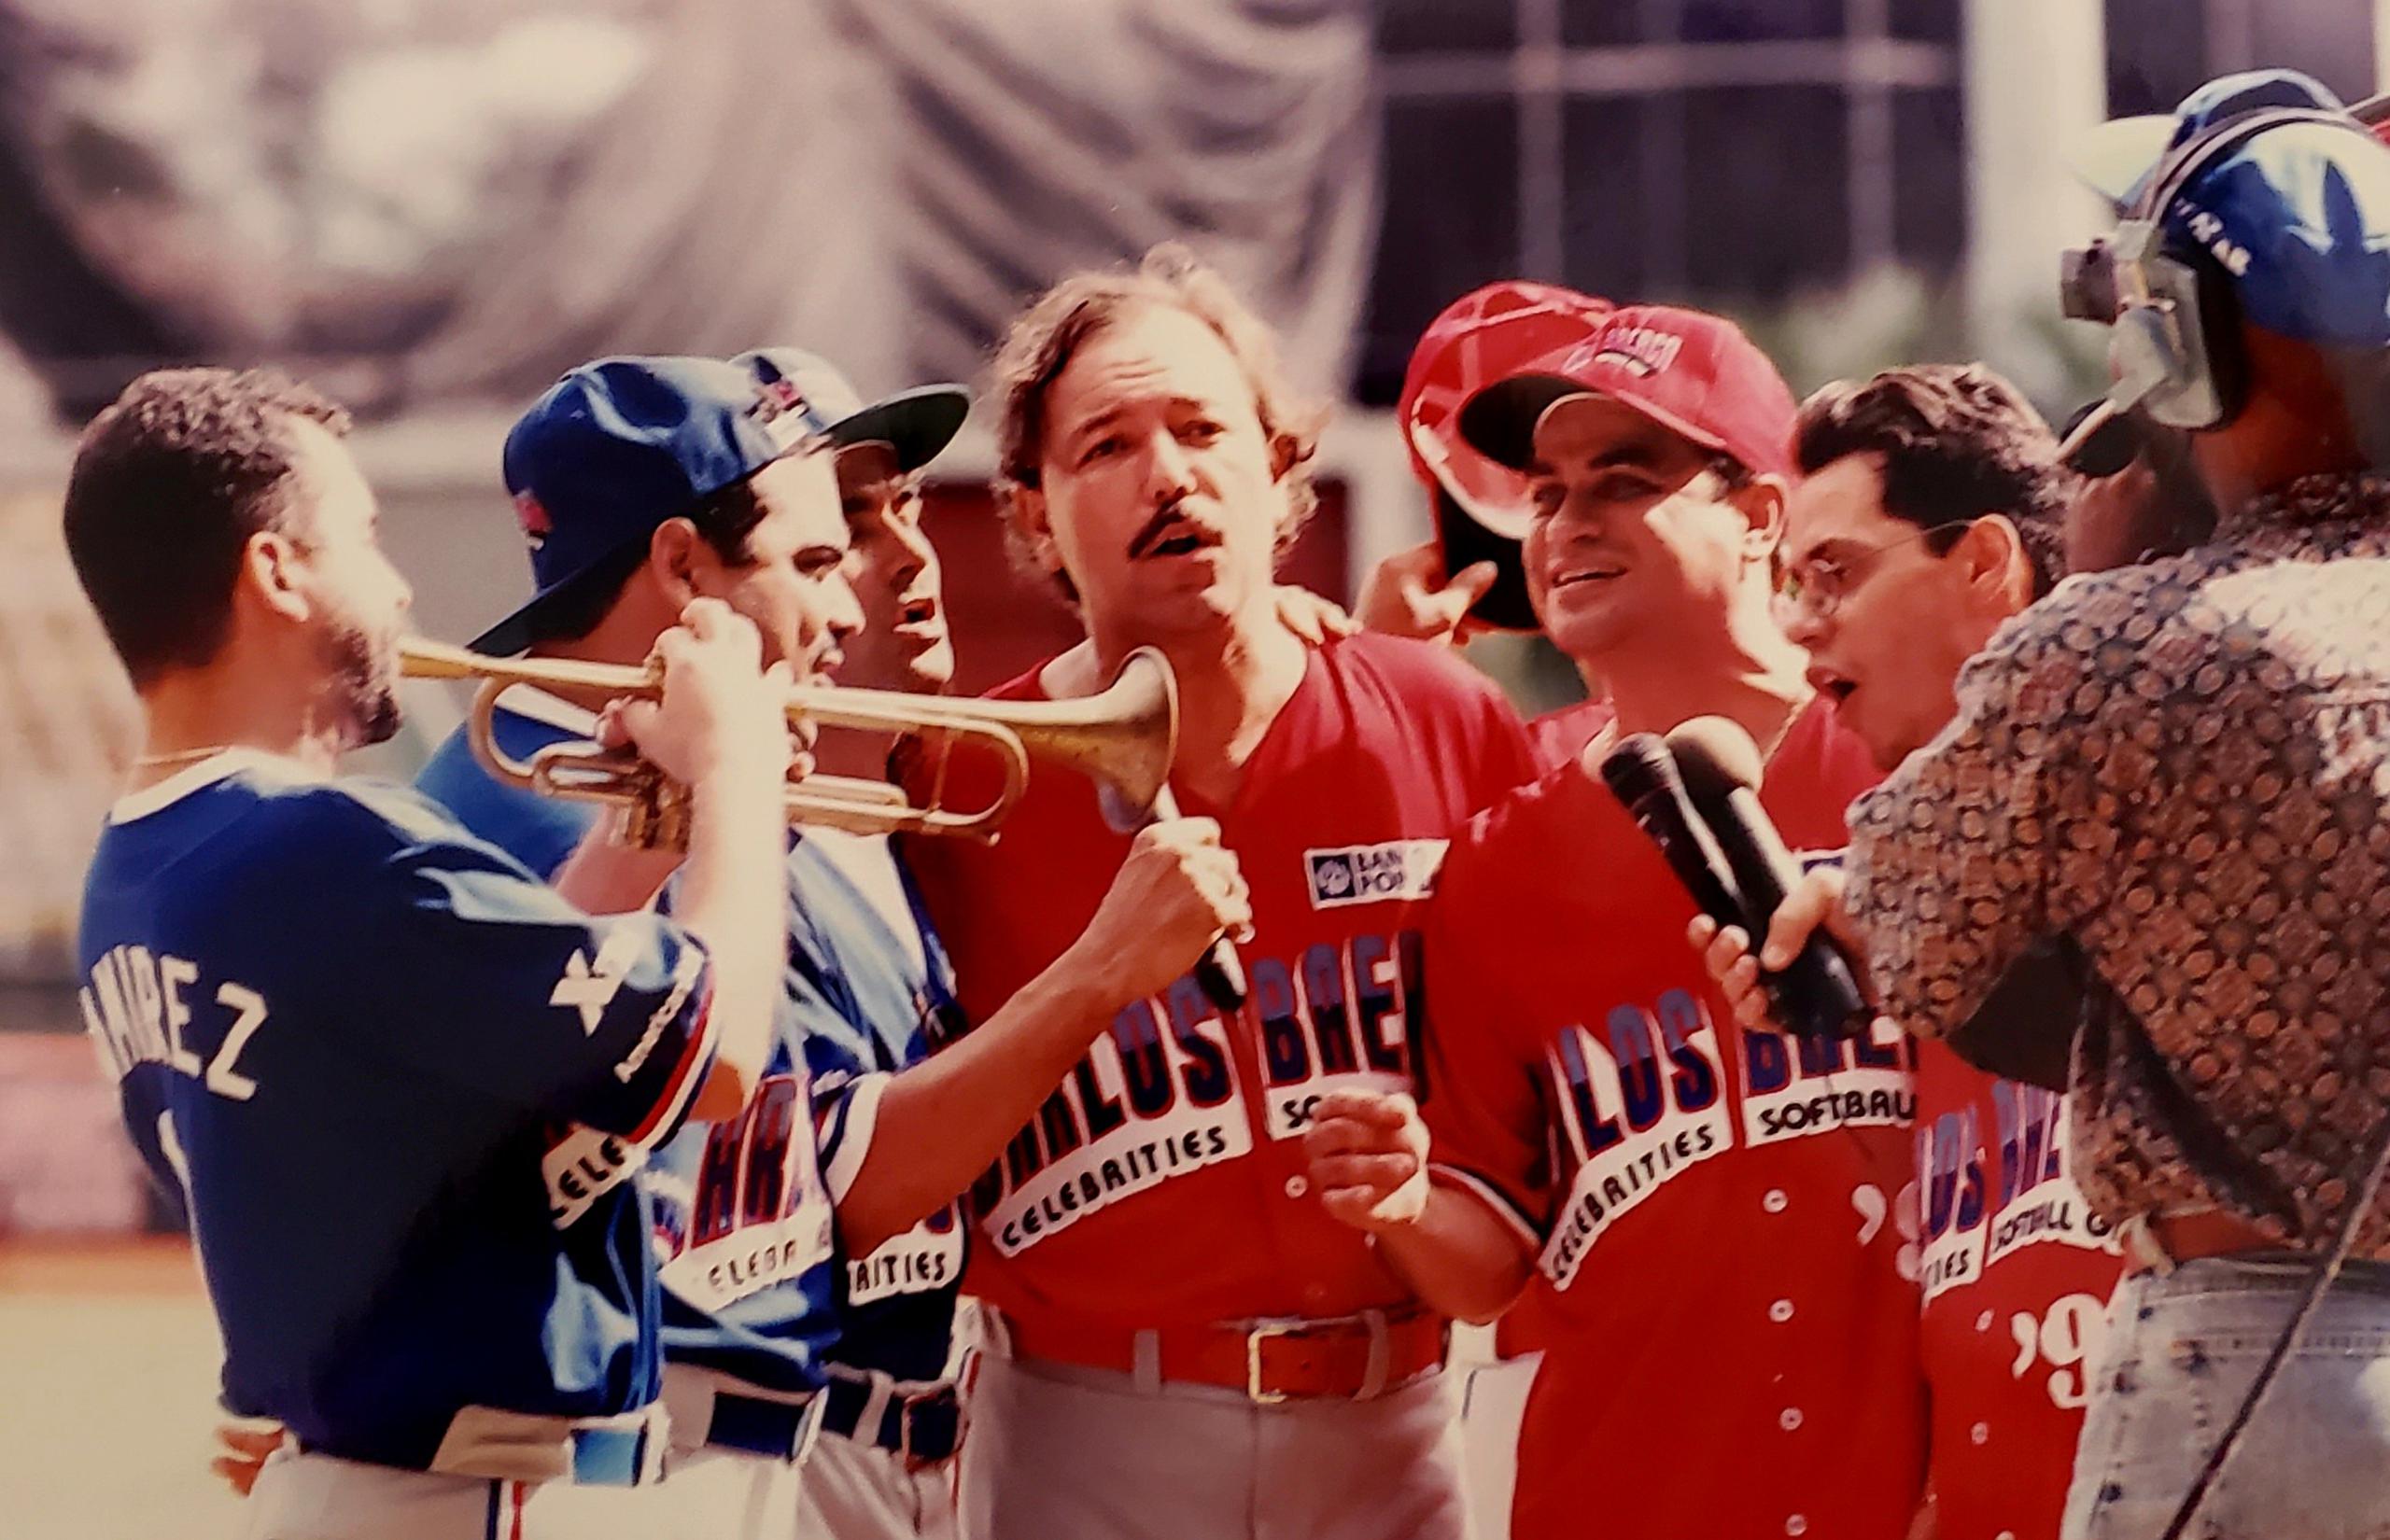 Humberto Ramírez, Wilkins Gilberto, Santa Rosa, Rubén Blades, Tony Vega y Marc Anthony se unieron para entonar el himno nacional de Puerto Rico previo al Carlos Baerga Celebrities Softball Game del 1995.